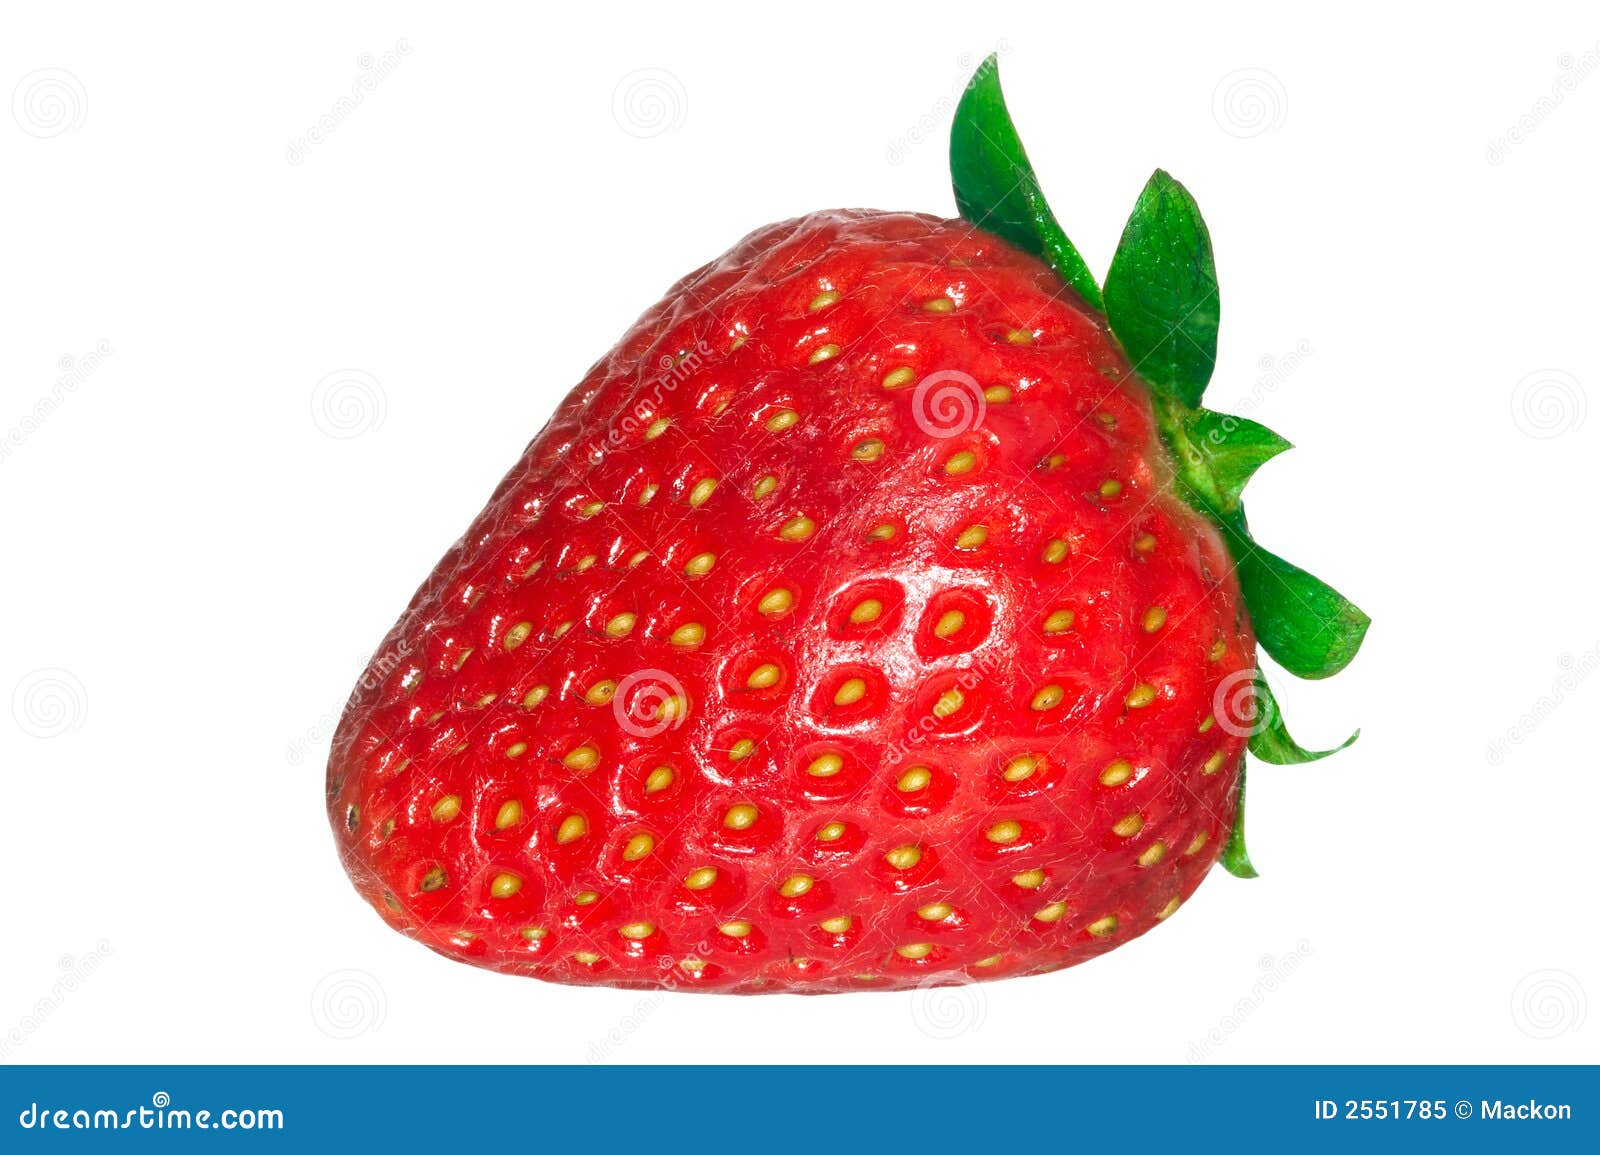 fraise 2551785